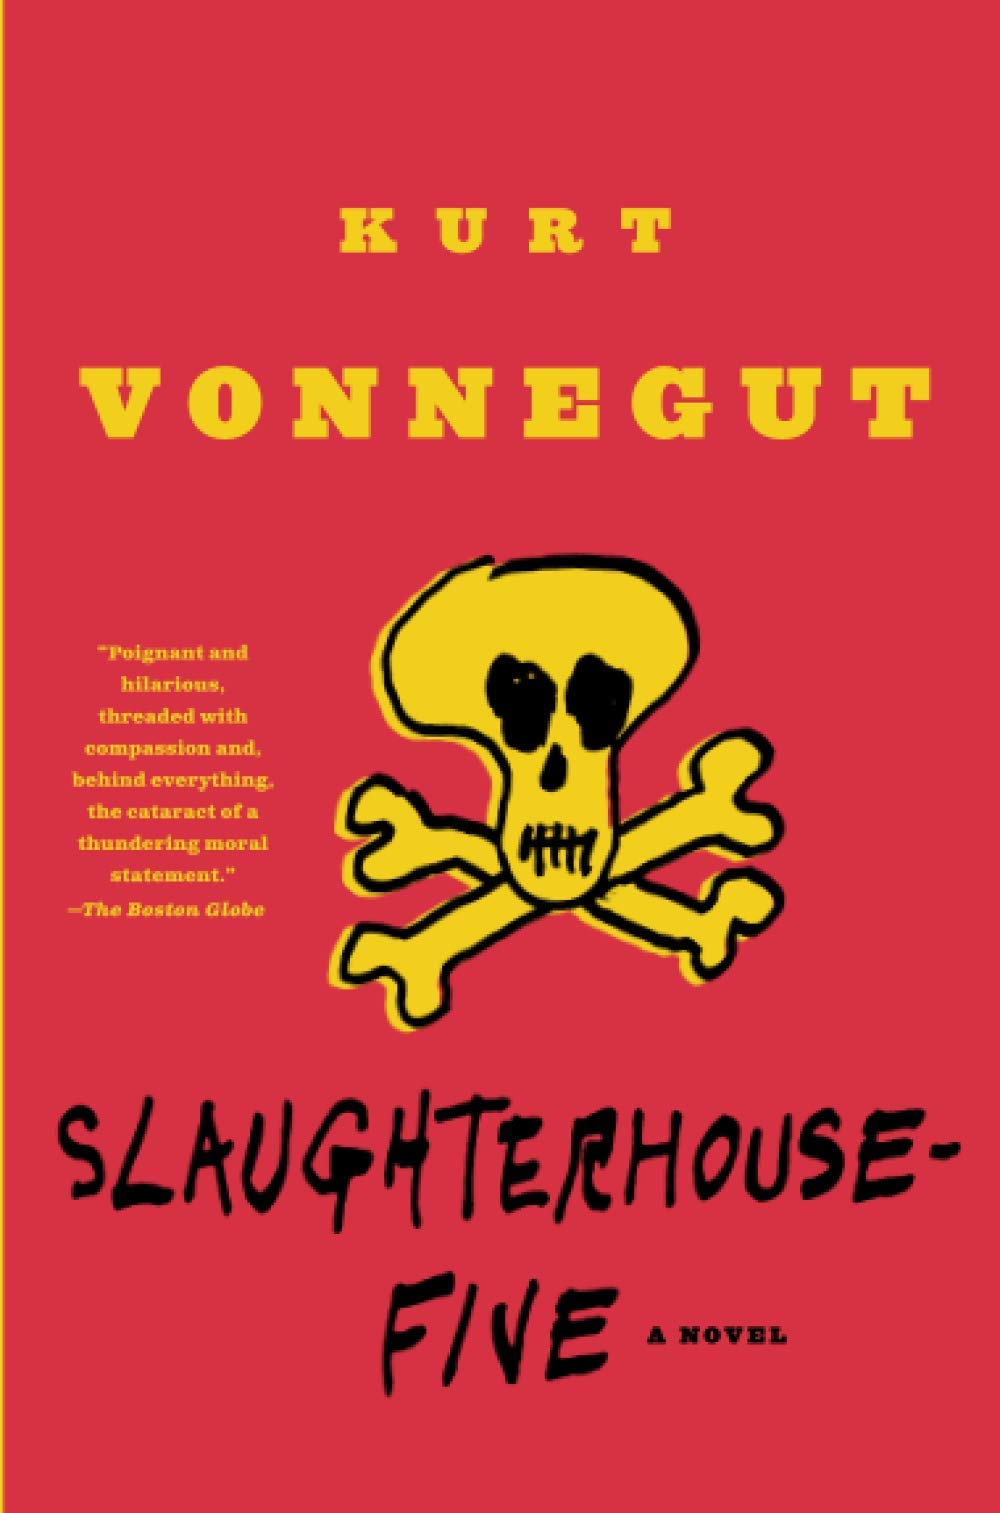 Slaughterhouse-Five, by Kurt Vonnegut